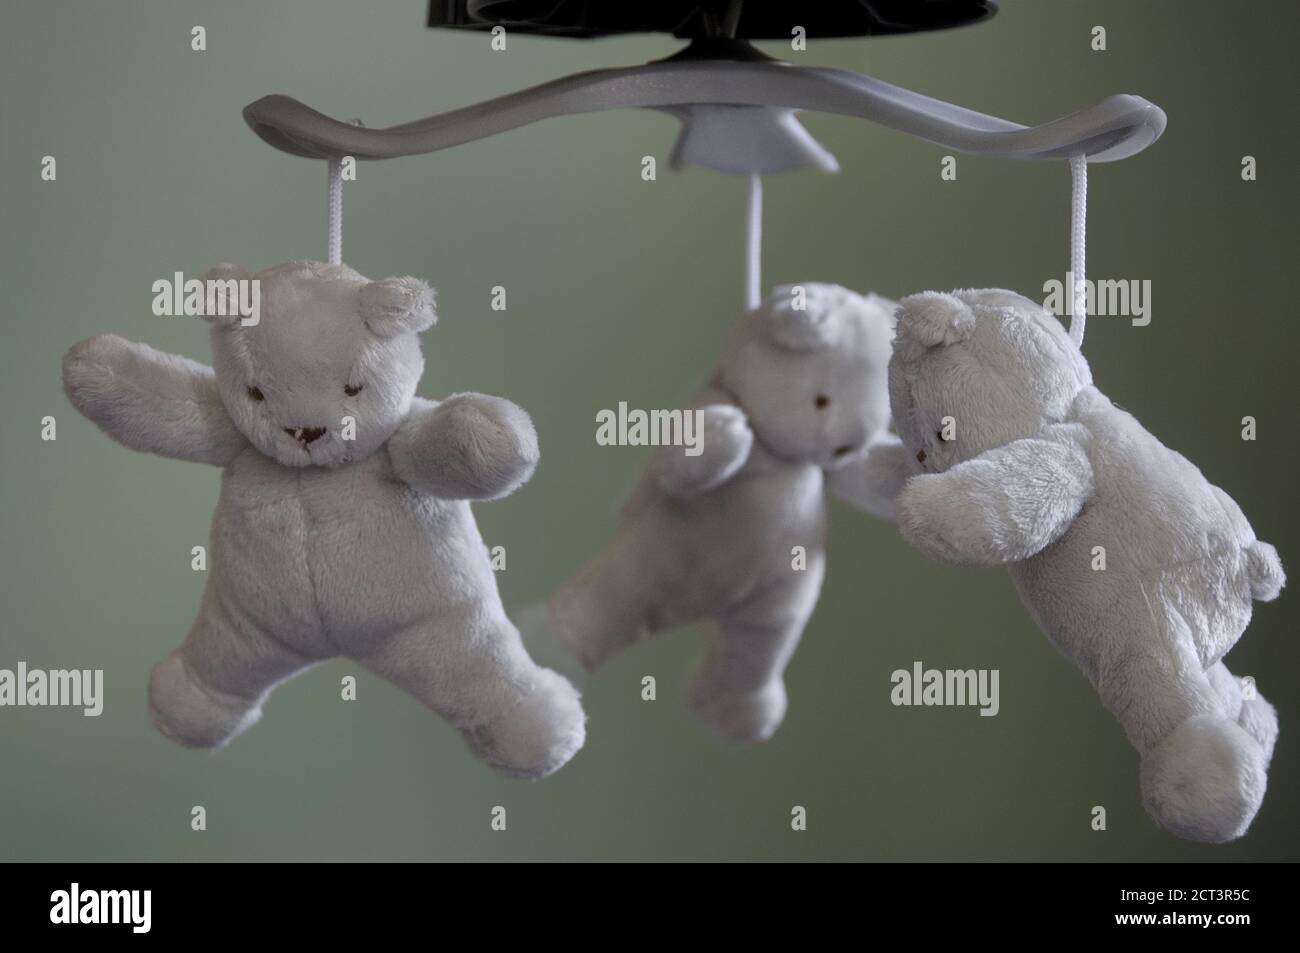 Tre morbidi orsacchiotti bianchi e grigi appesi a un baby mobile, concentrati in primo piano Foto Stock